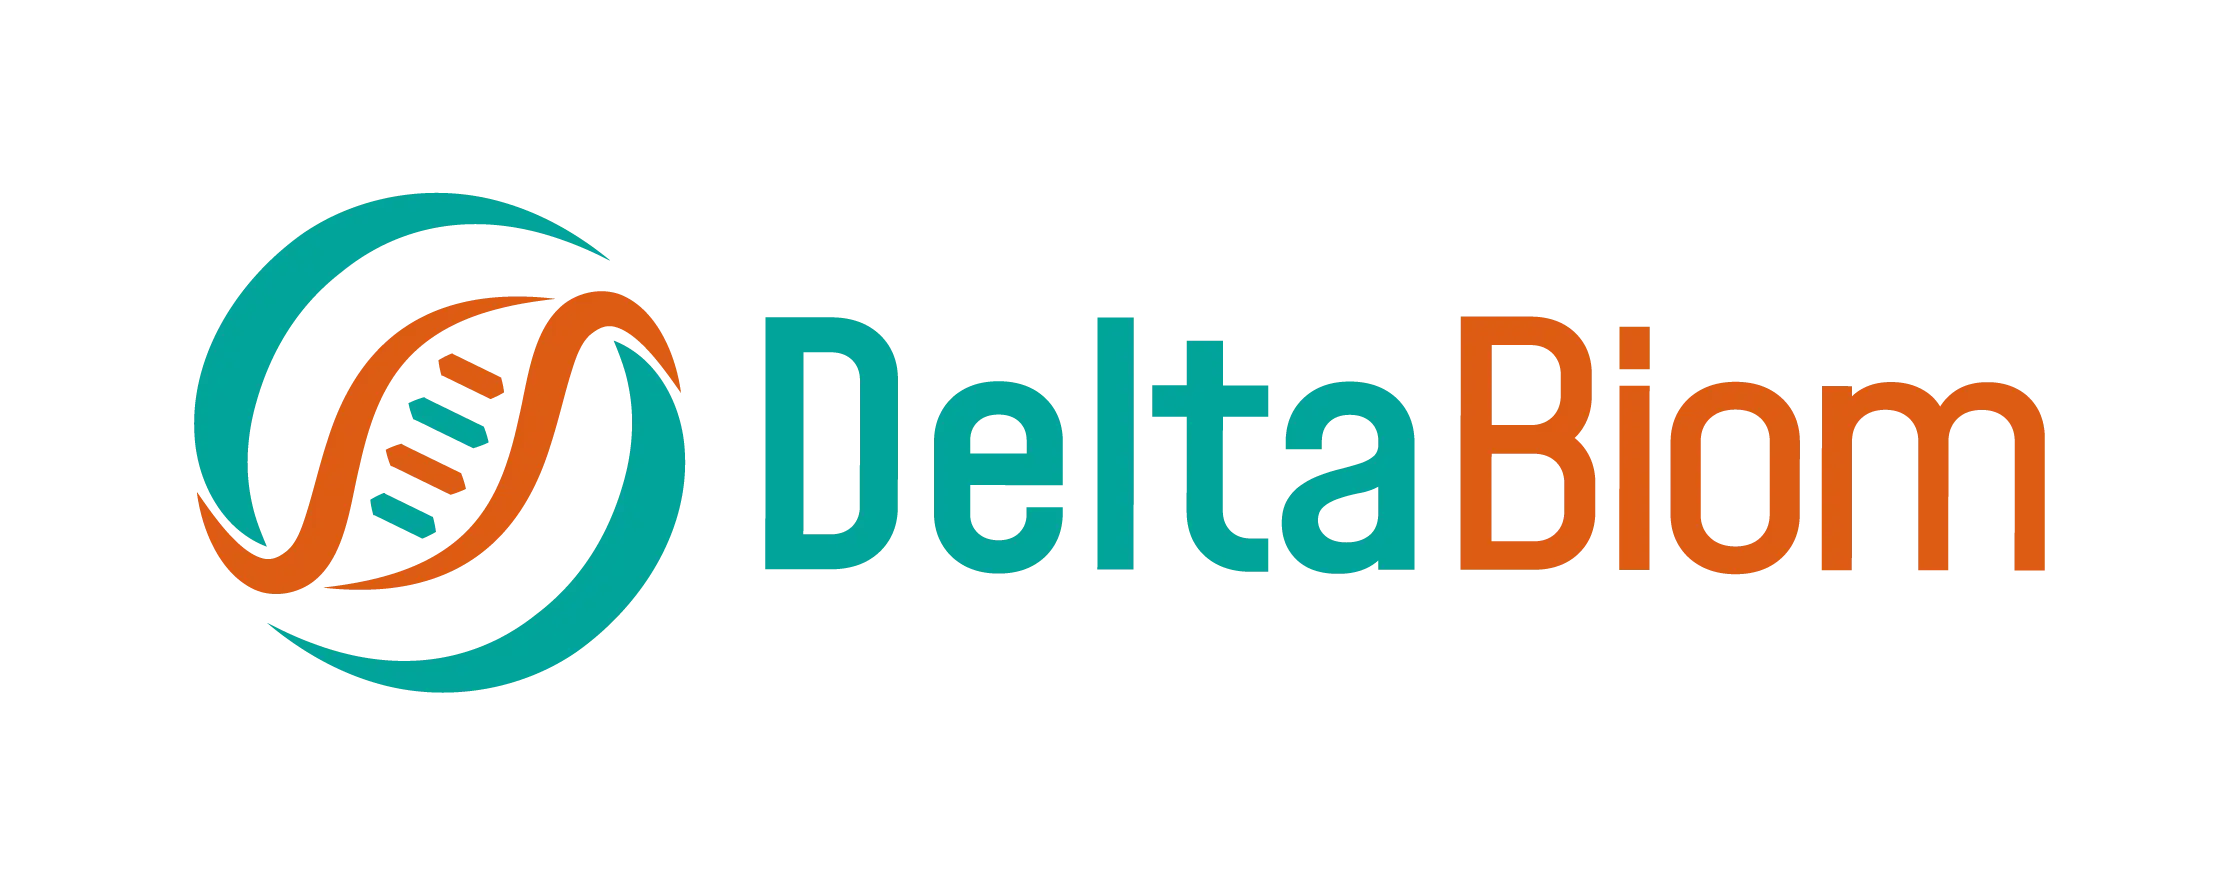 DeltaBiom logo